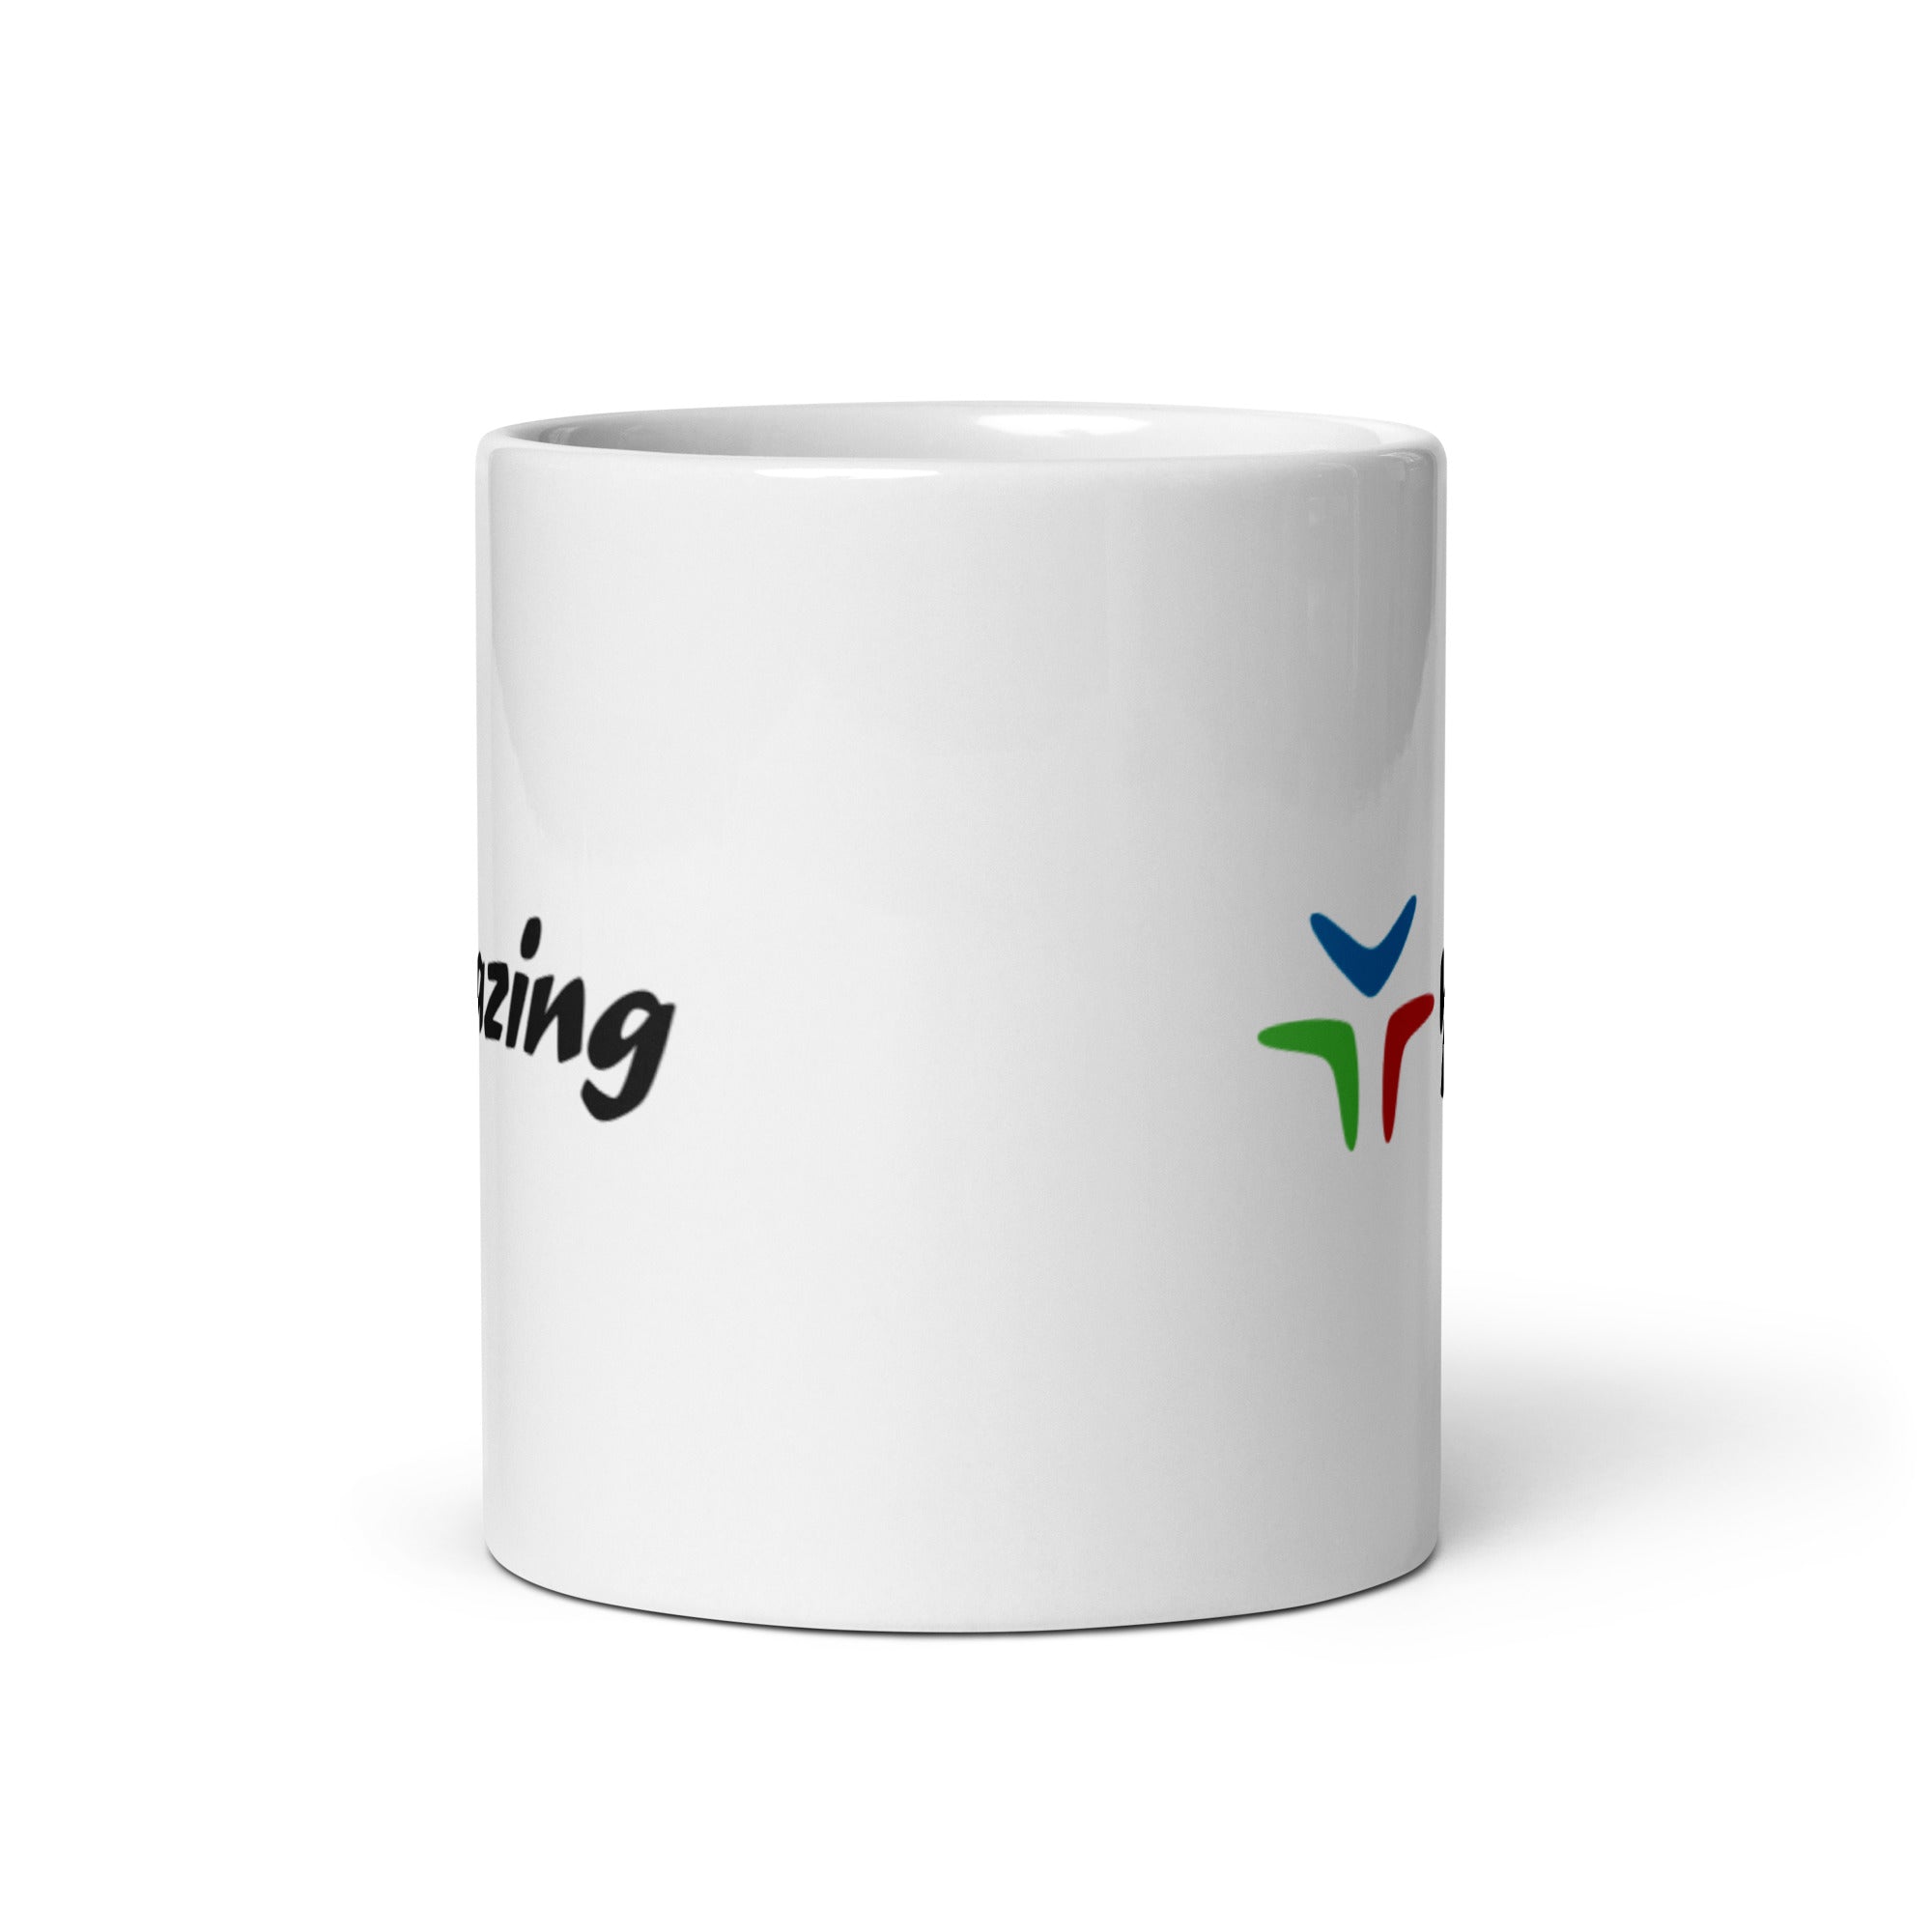 Yazing White glossy mug